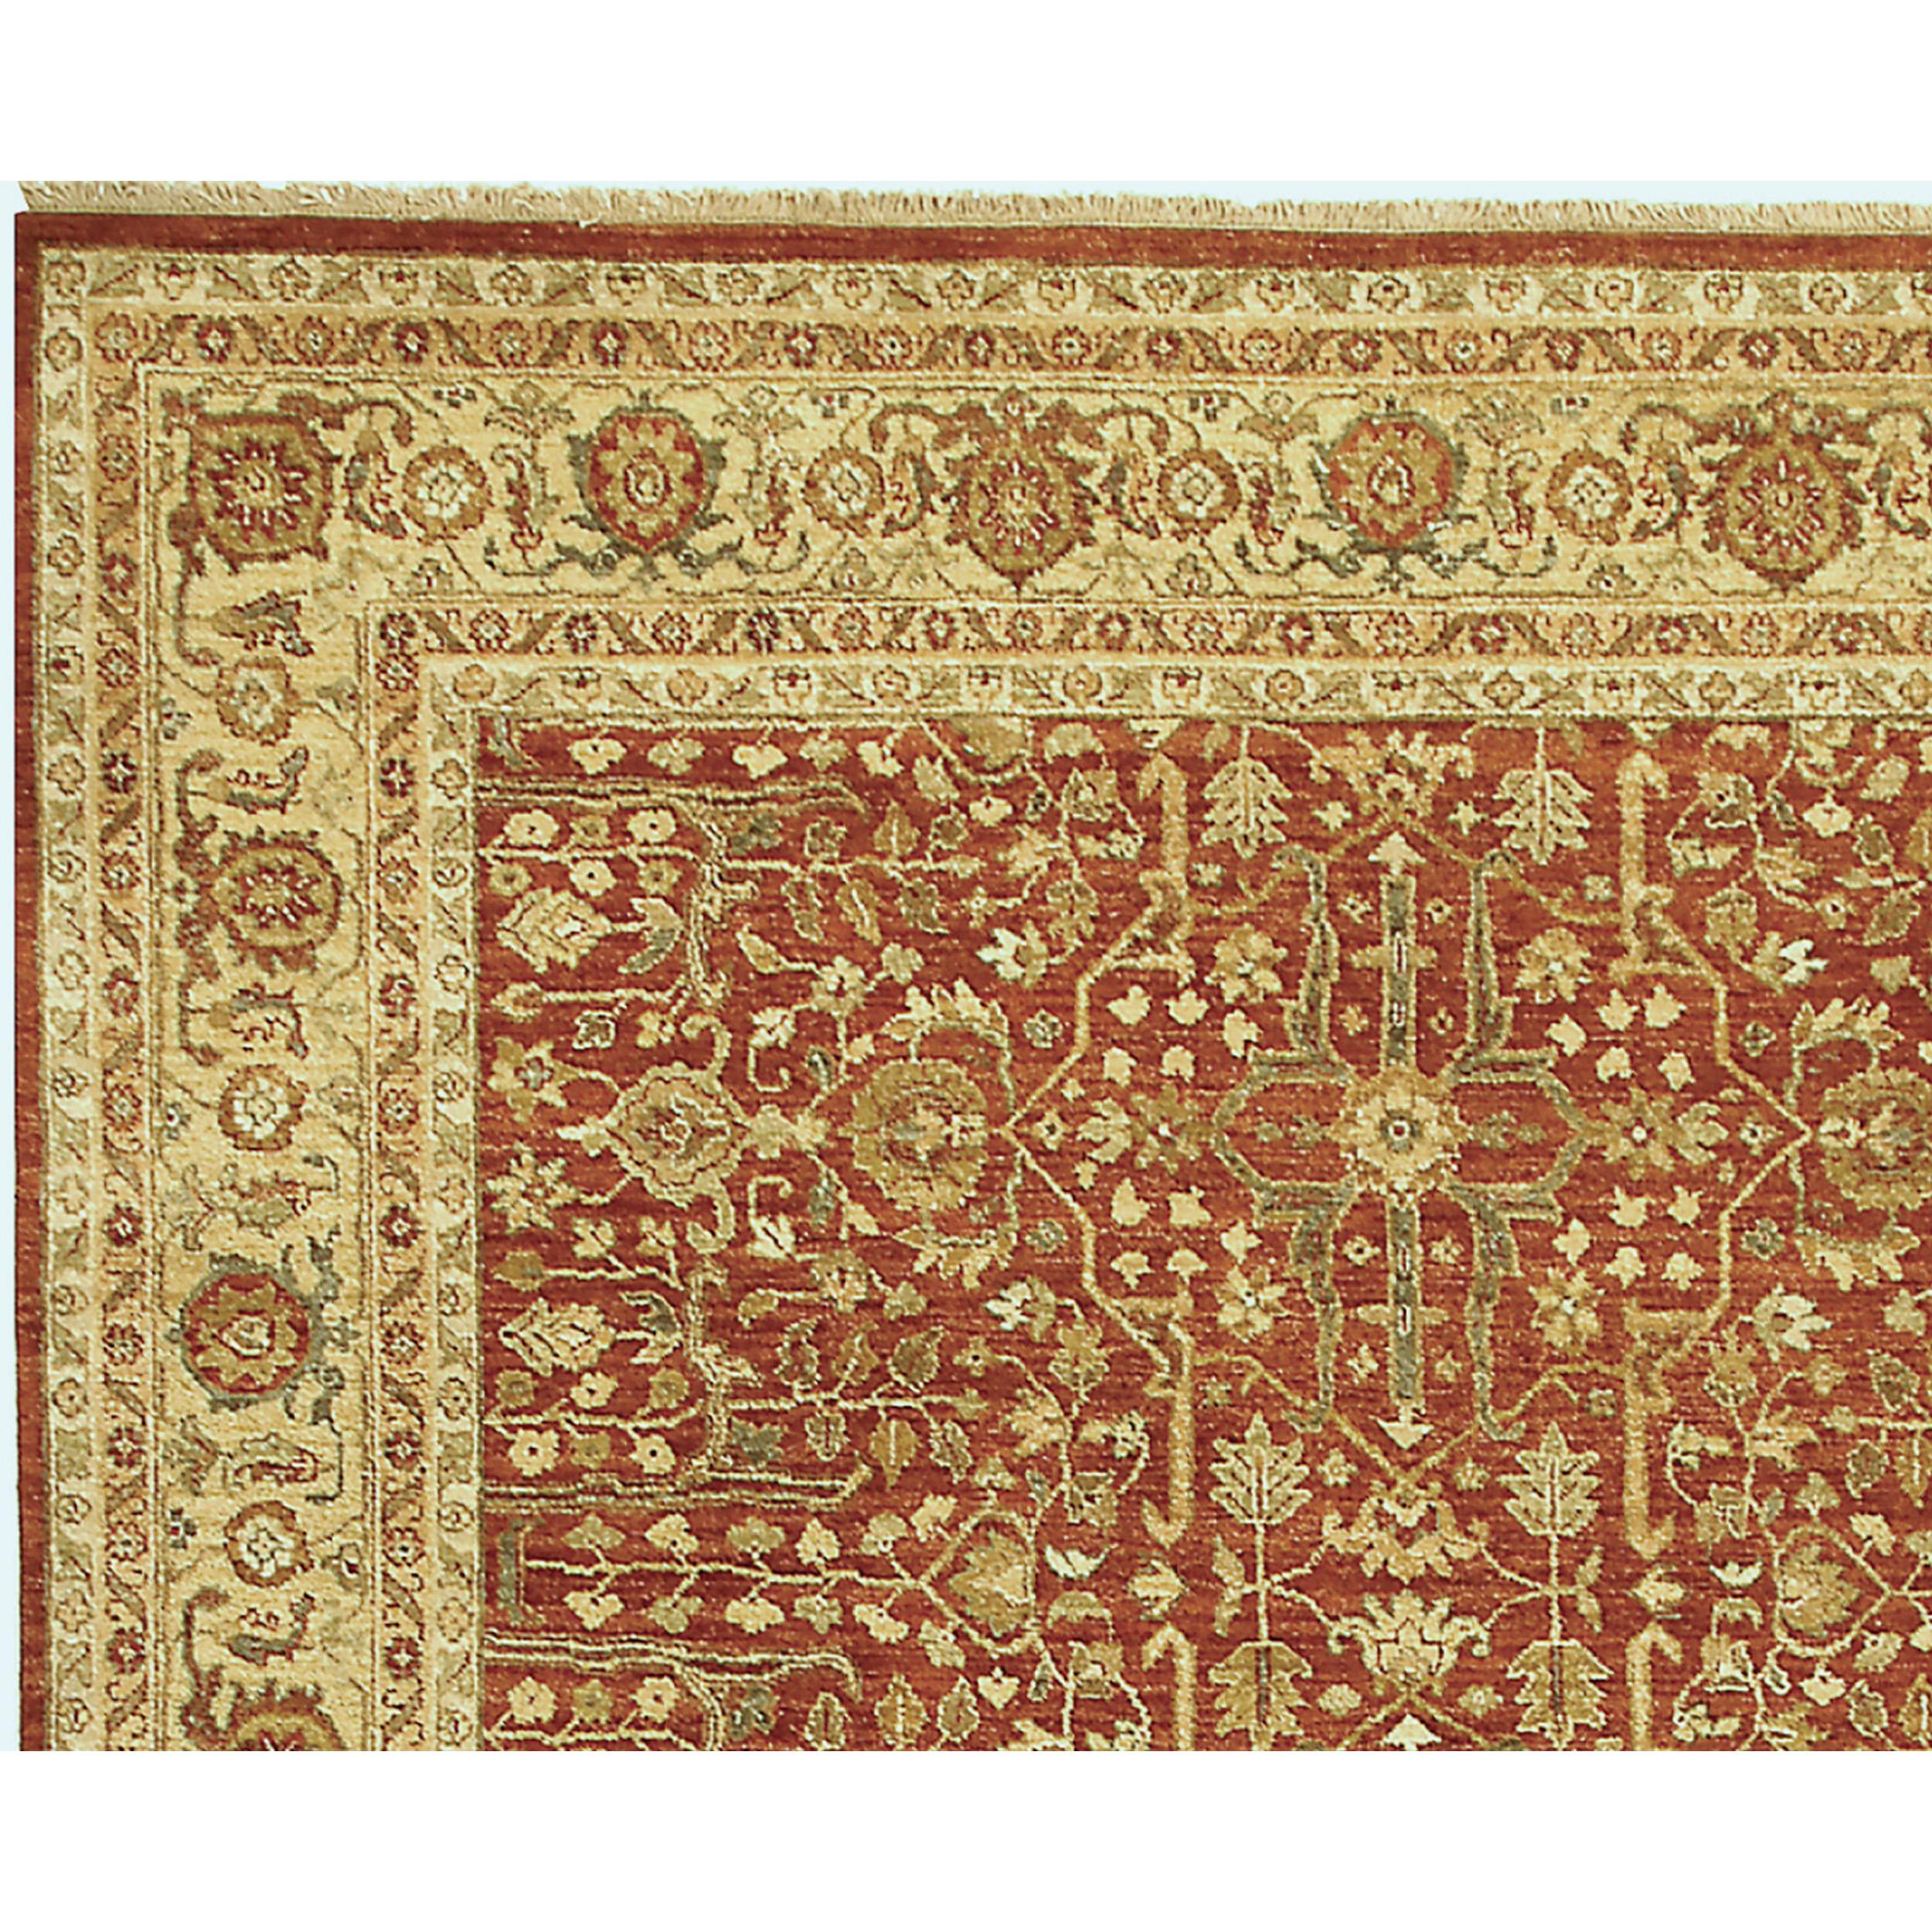 Méticuleusement confectionné, ce tapis fait appel aux techniques de tissage traditionnelles les plus complexes de l'Inde, guidées par l'expertise d'artisans qualifiés. Chaque tapis est un travail d'amour, les tisseurs à la main consacrant